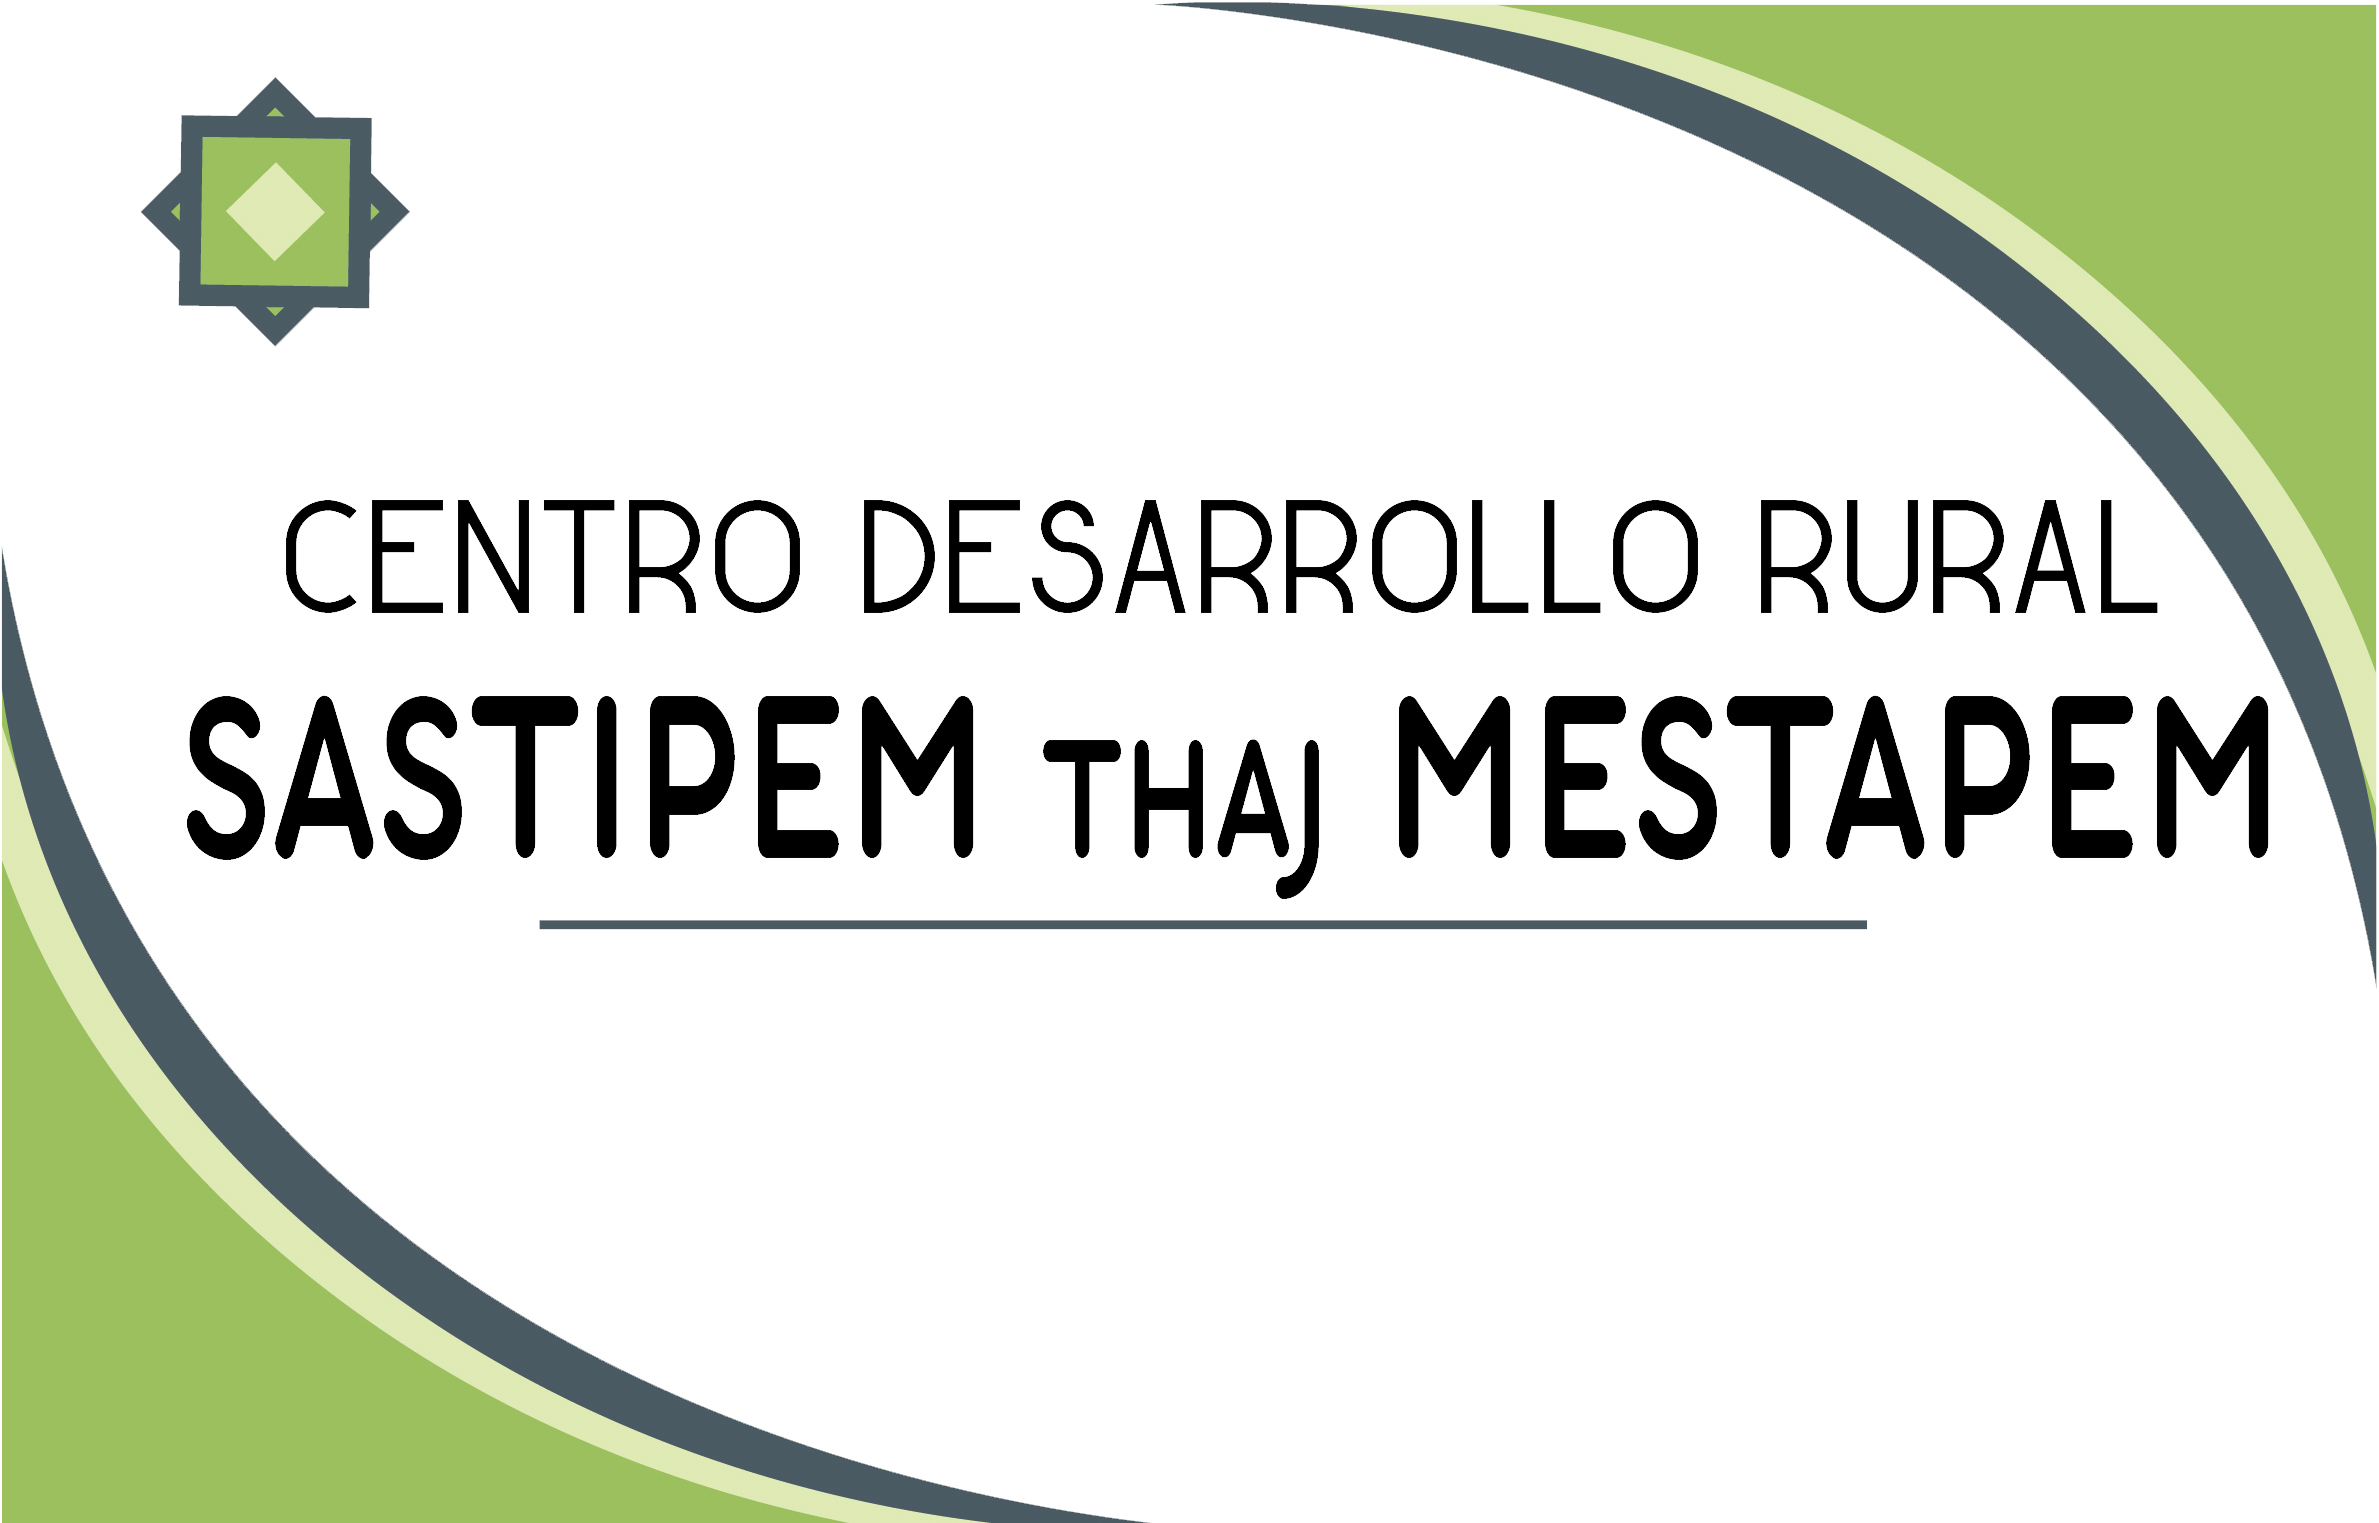 Logotipo del centro desarrollo rural sastipem thaj mestapem con texto estilizado y curvas verdes abstractas.